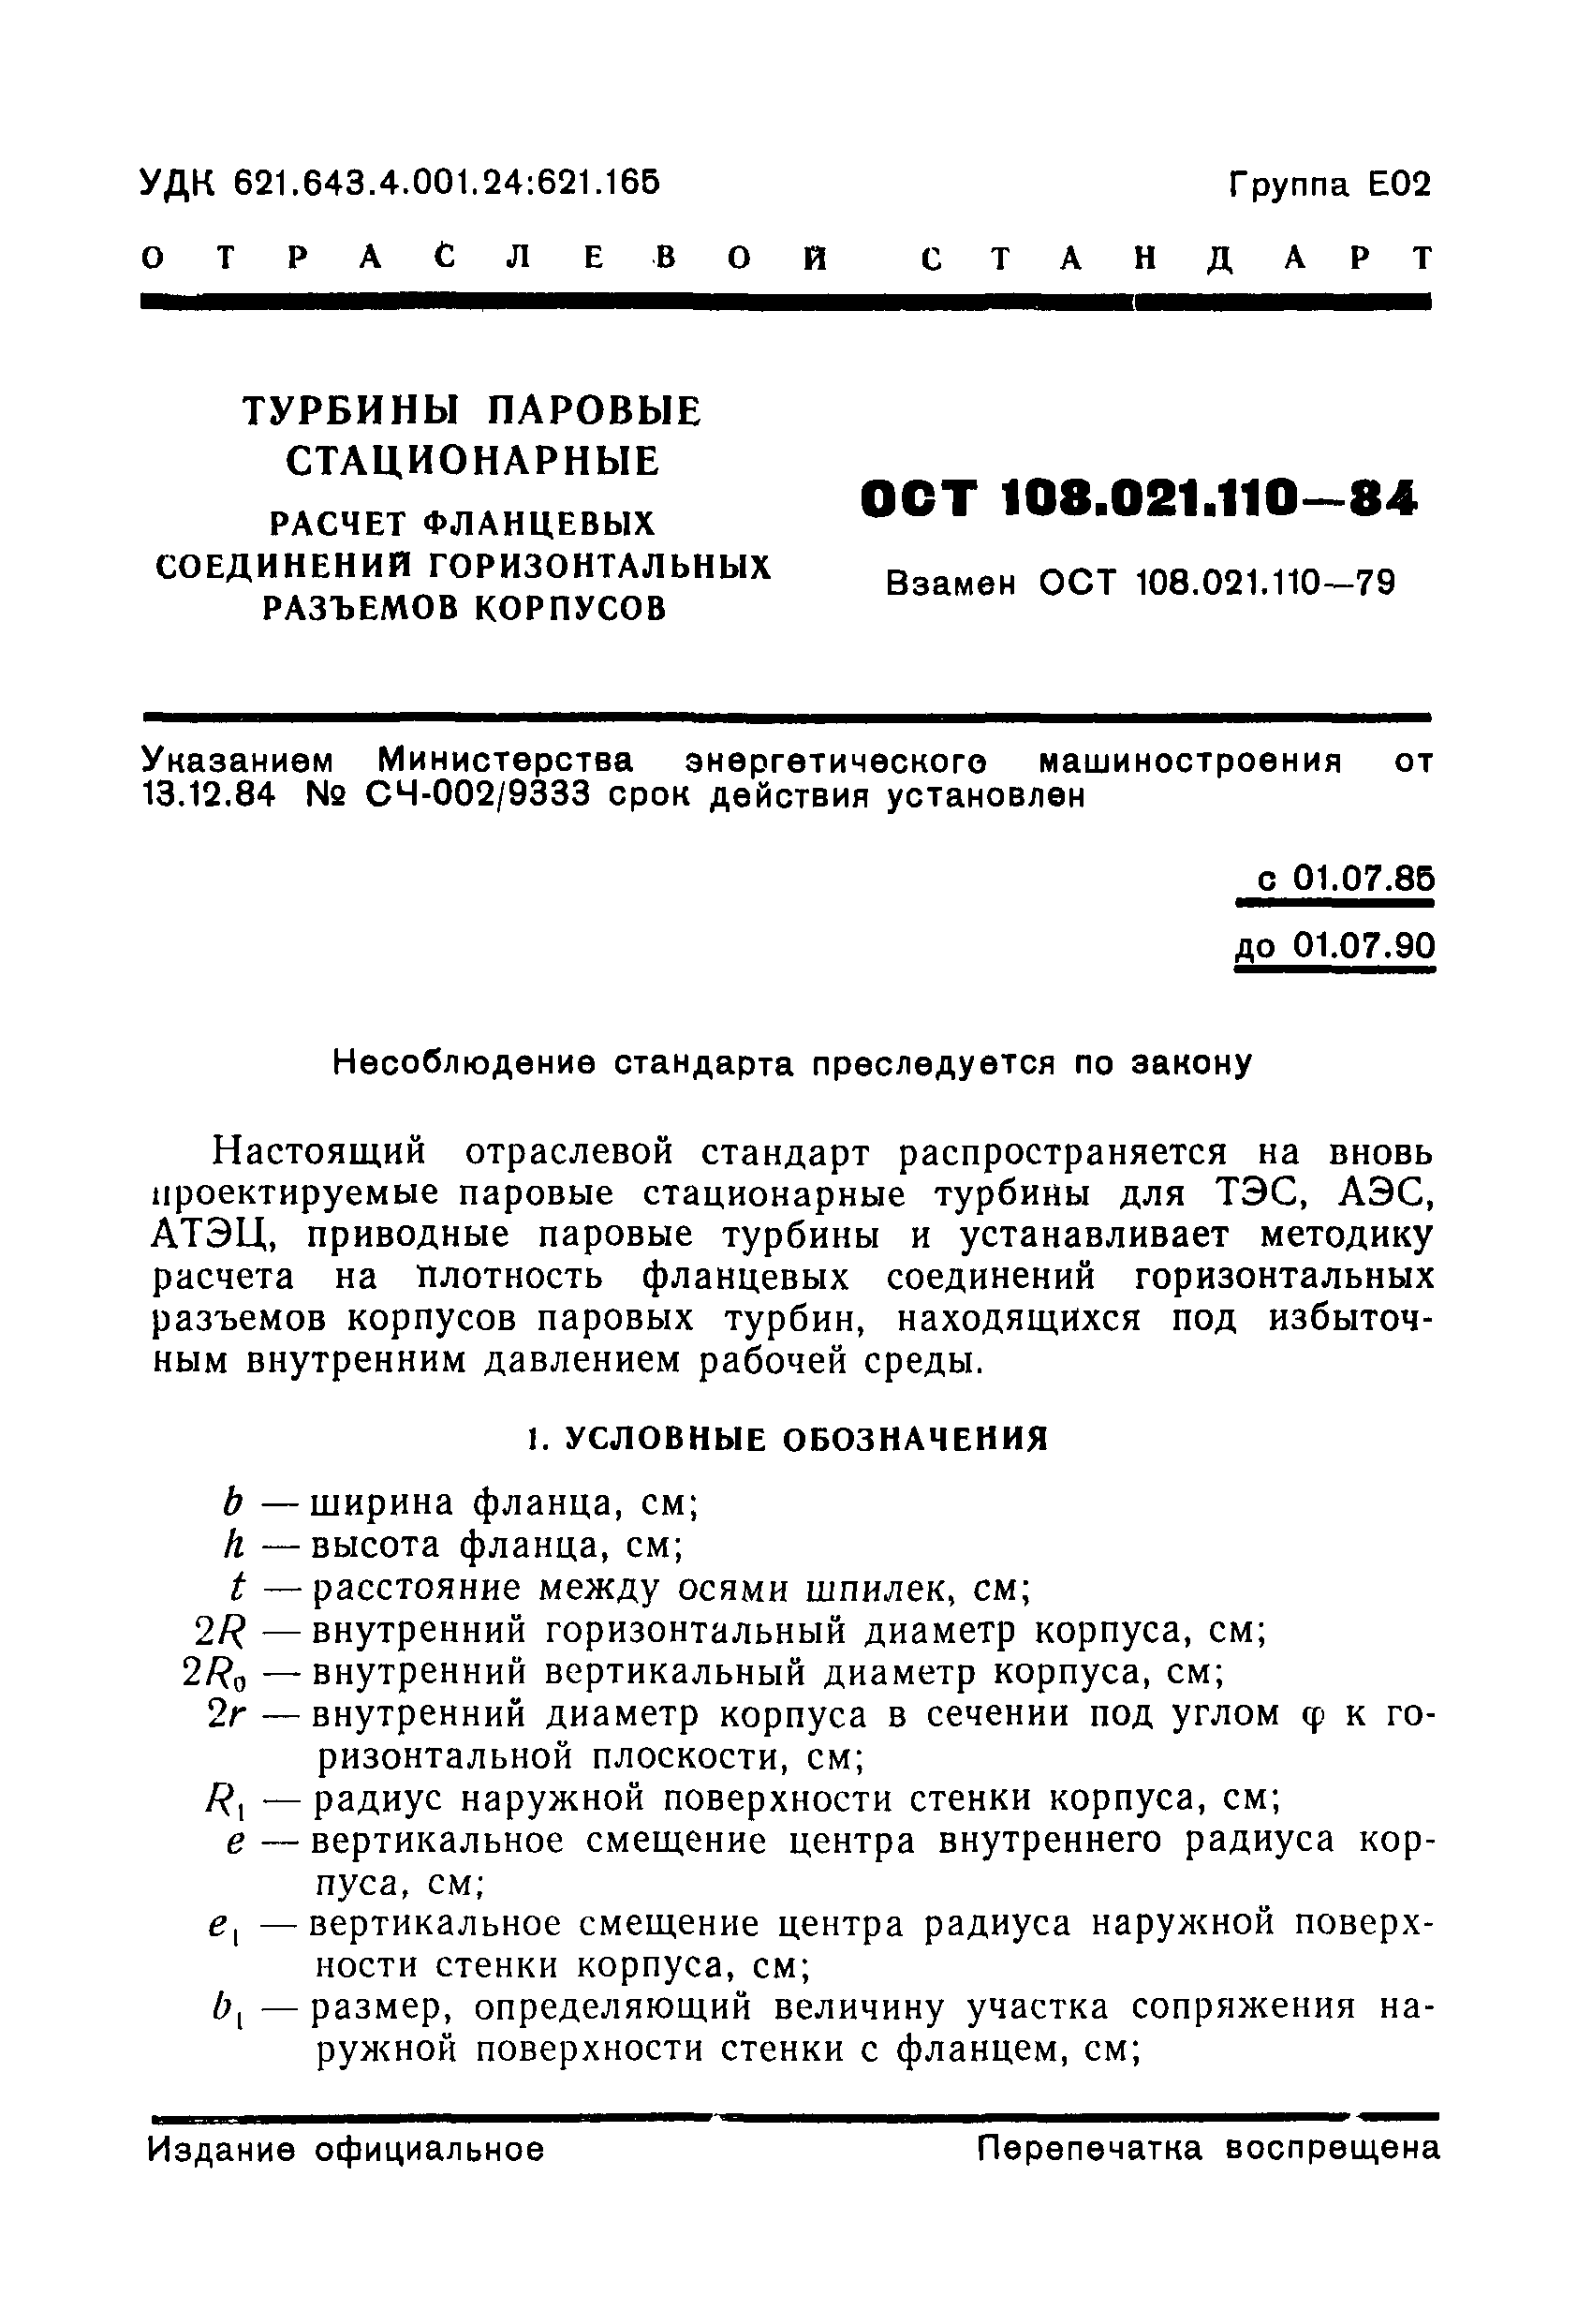 ОСТ 108.021.110-84